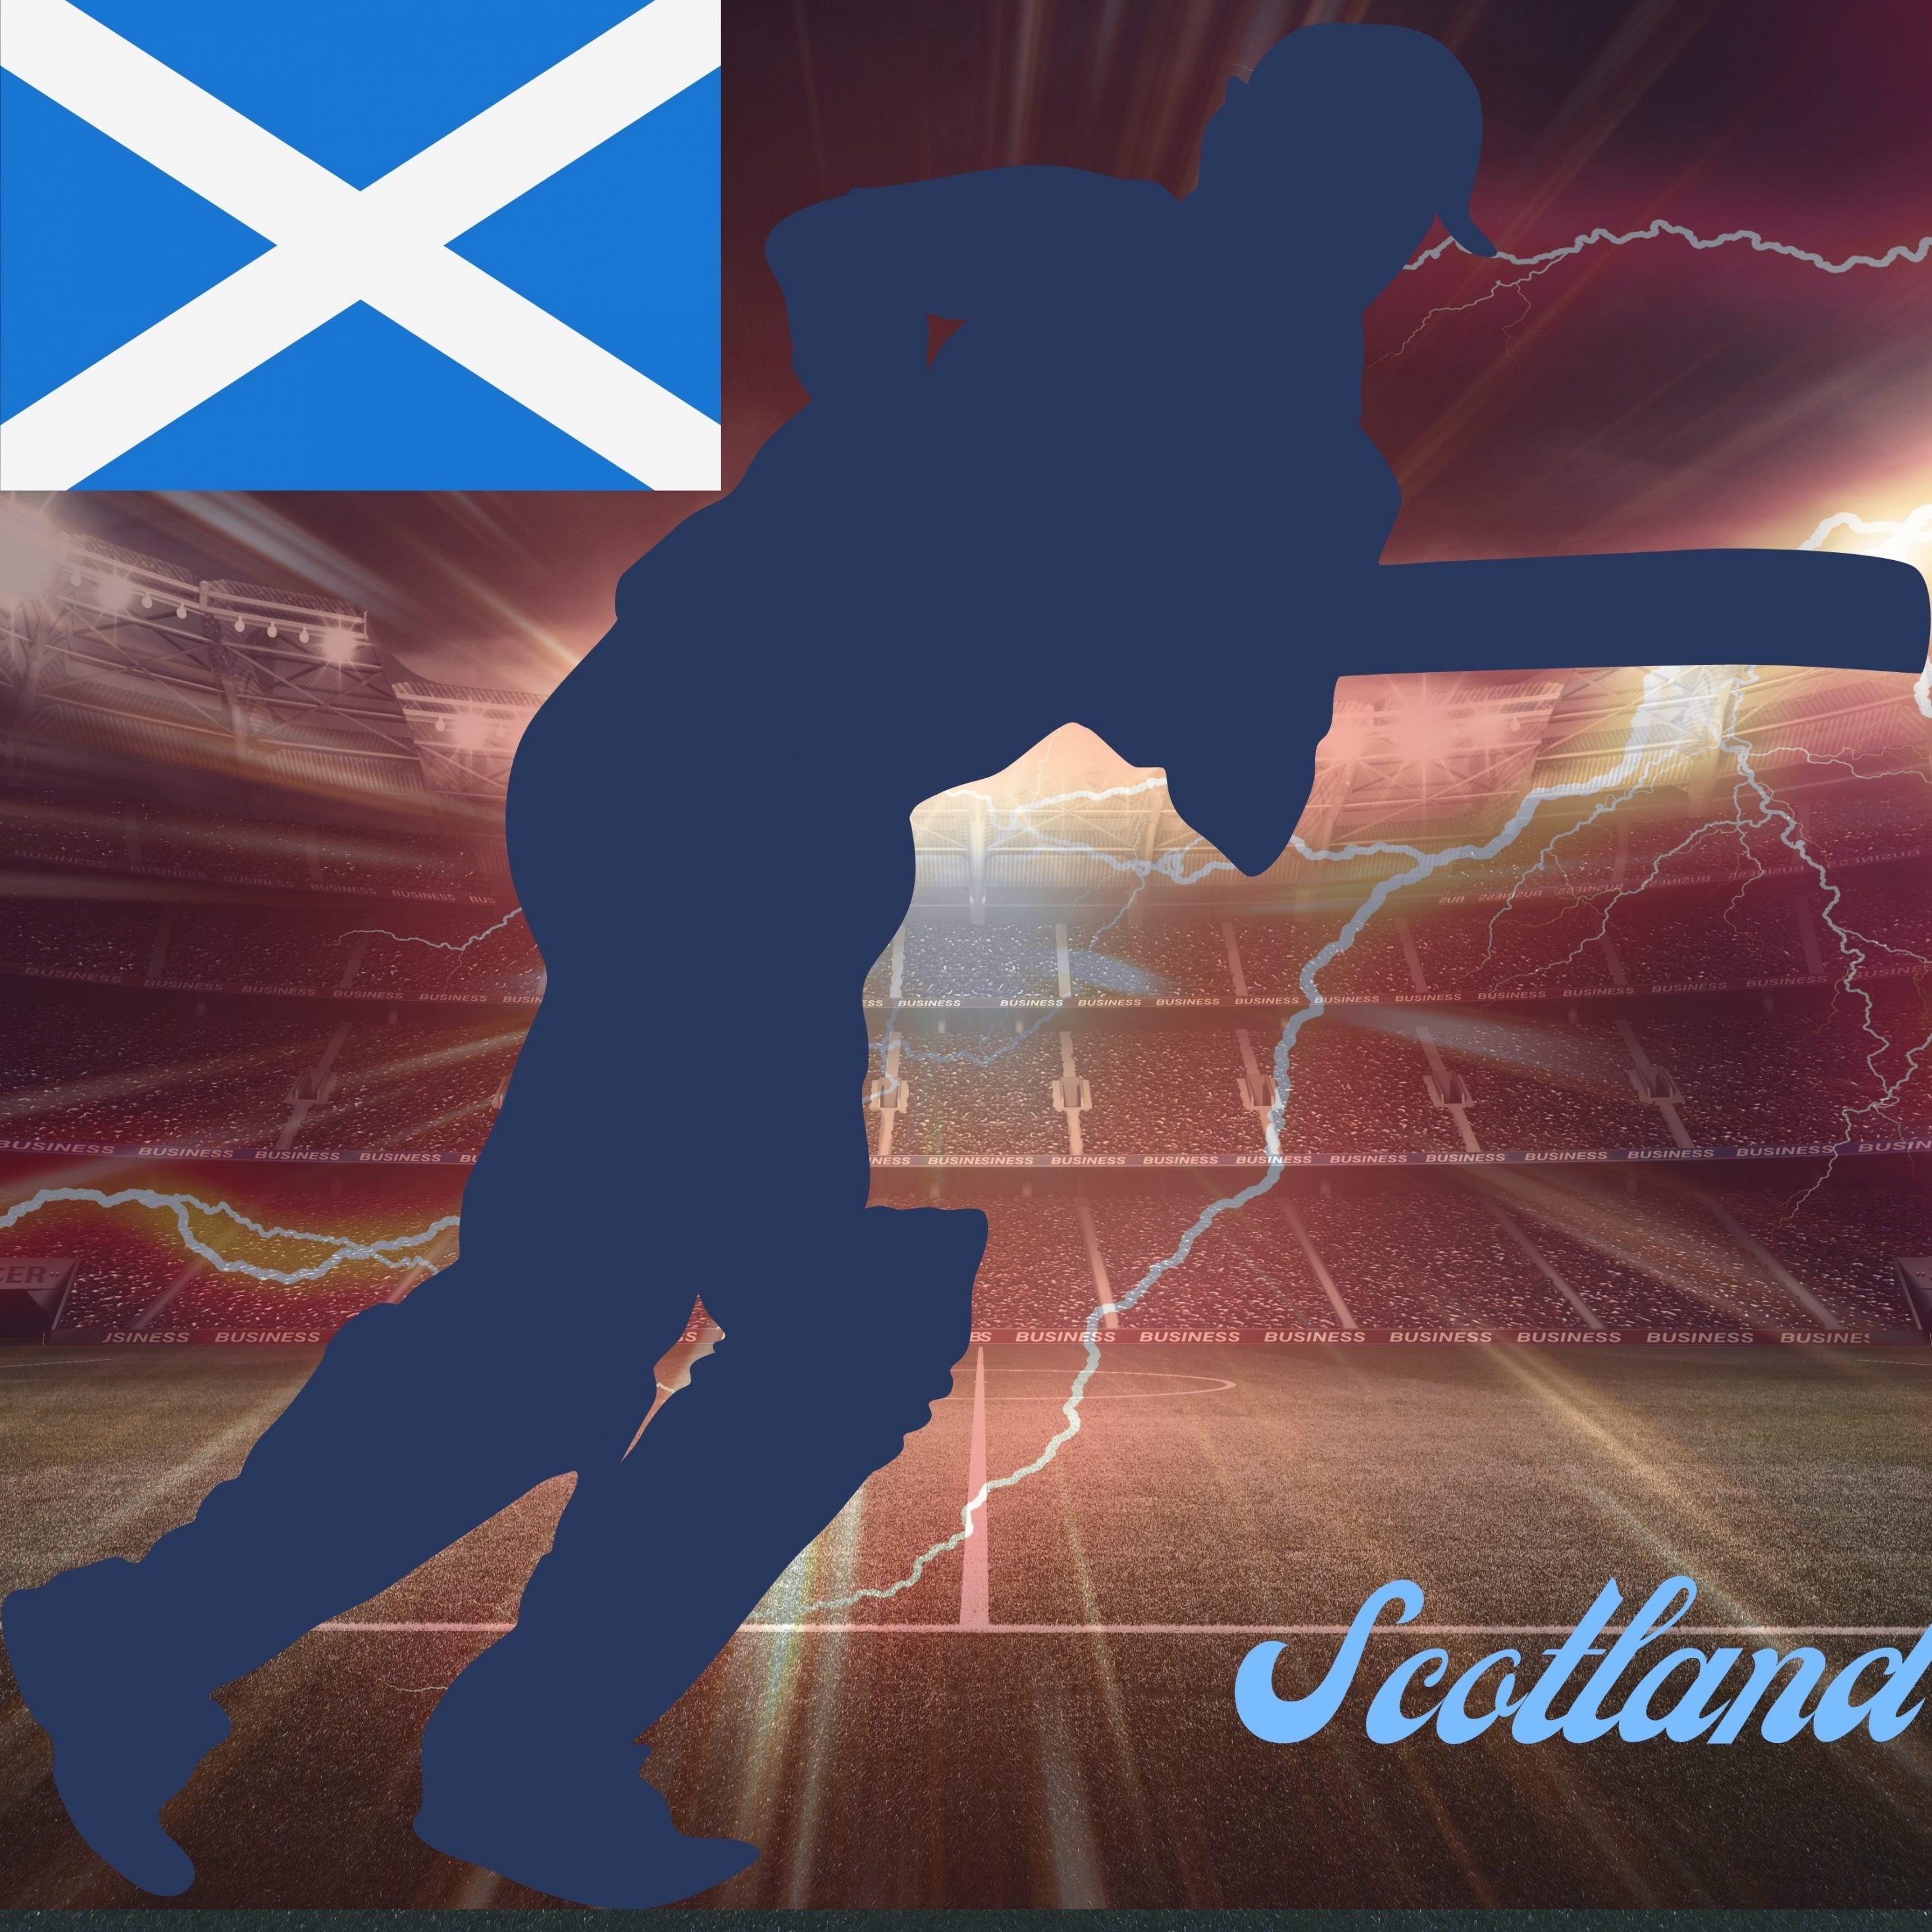 2932x2932 iPad Pro wallpaper 4k Scotland Cricket Stadium iPad Wallpaper 2932x2932 pixels resolution